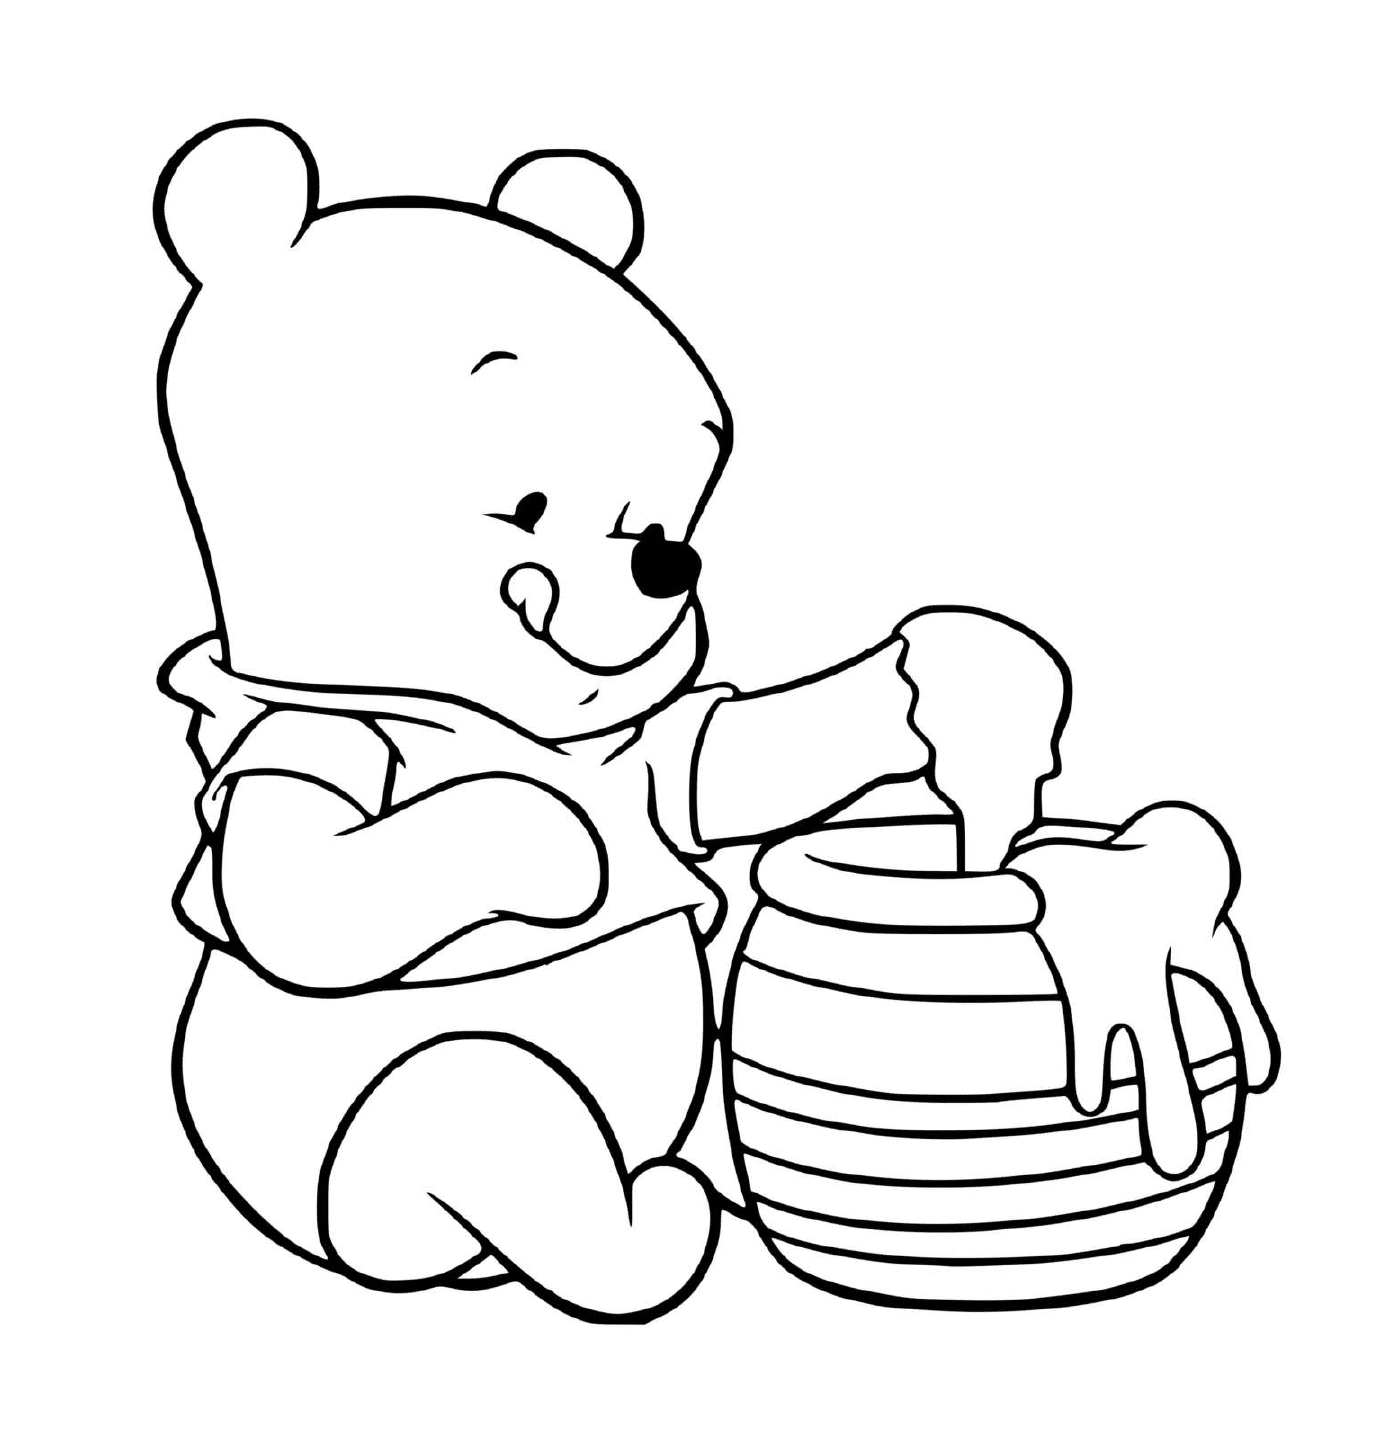  Winnie el oso ama la miel 